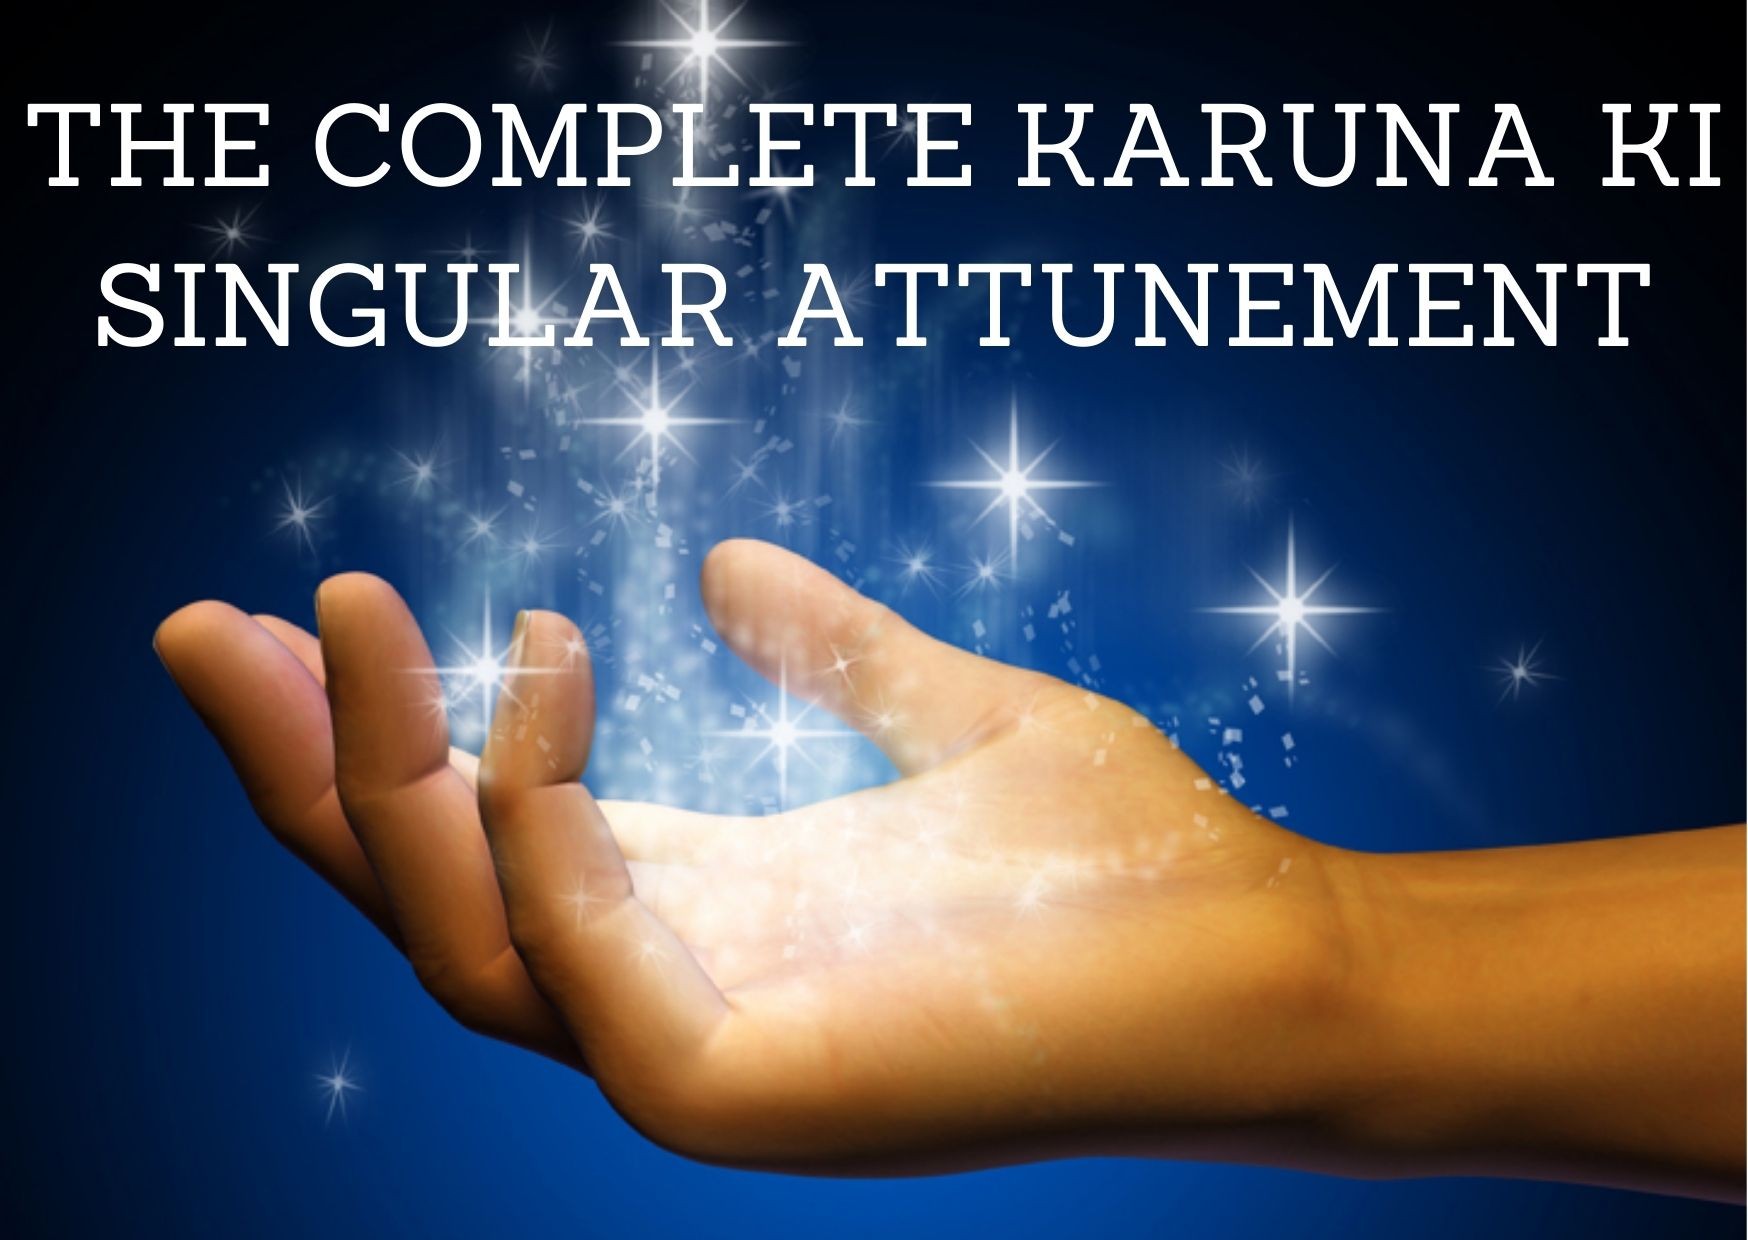 The Complete Karuna Ki Singular Attunement